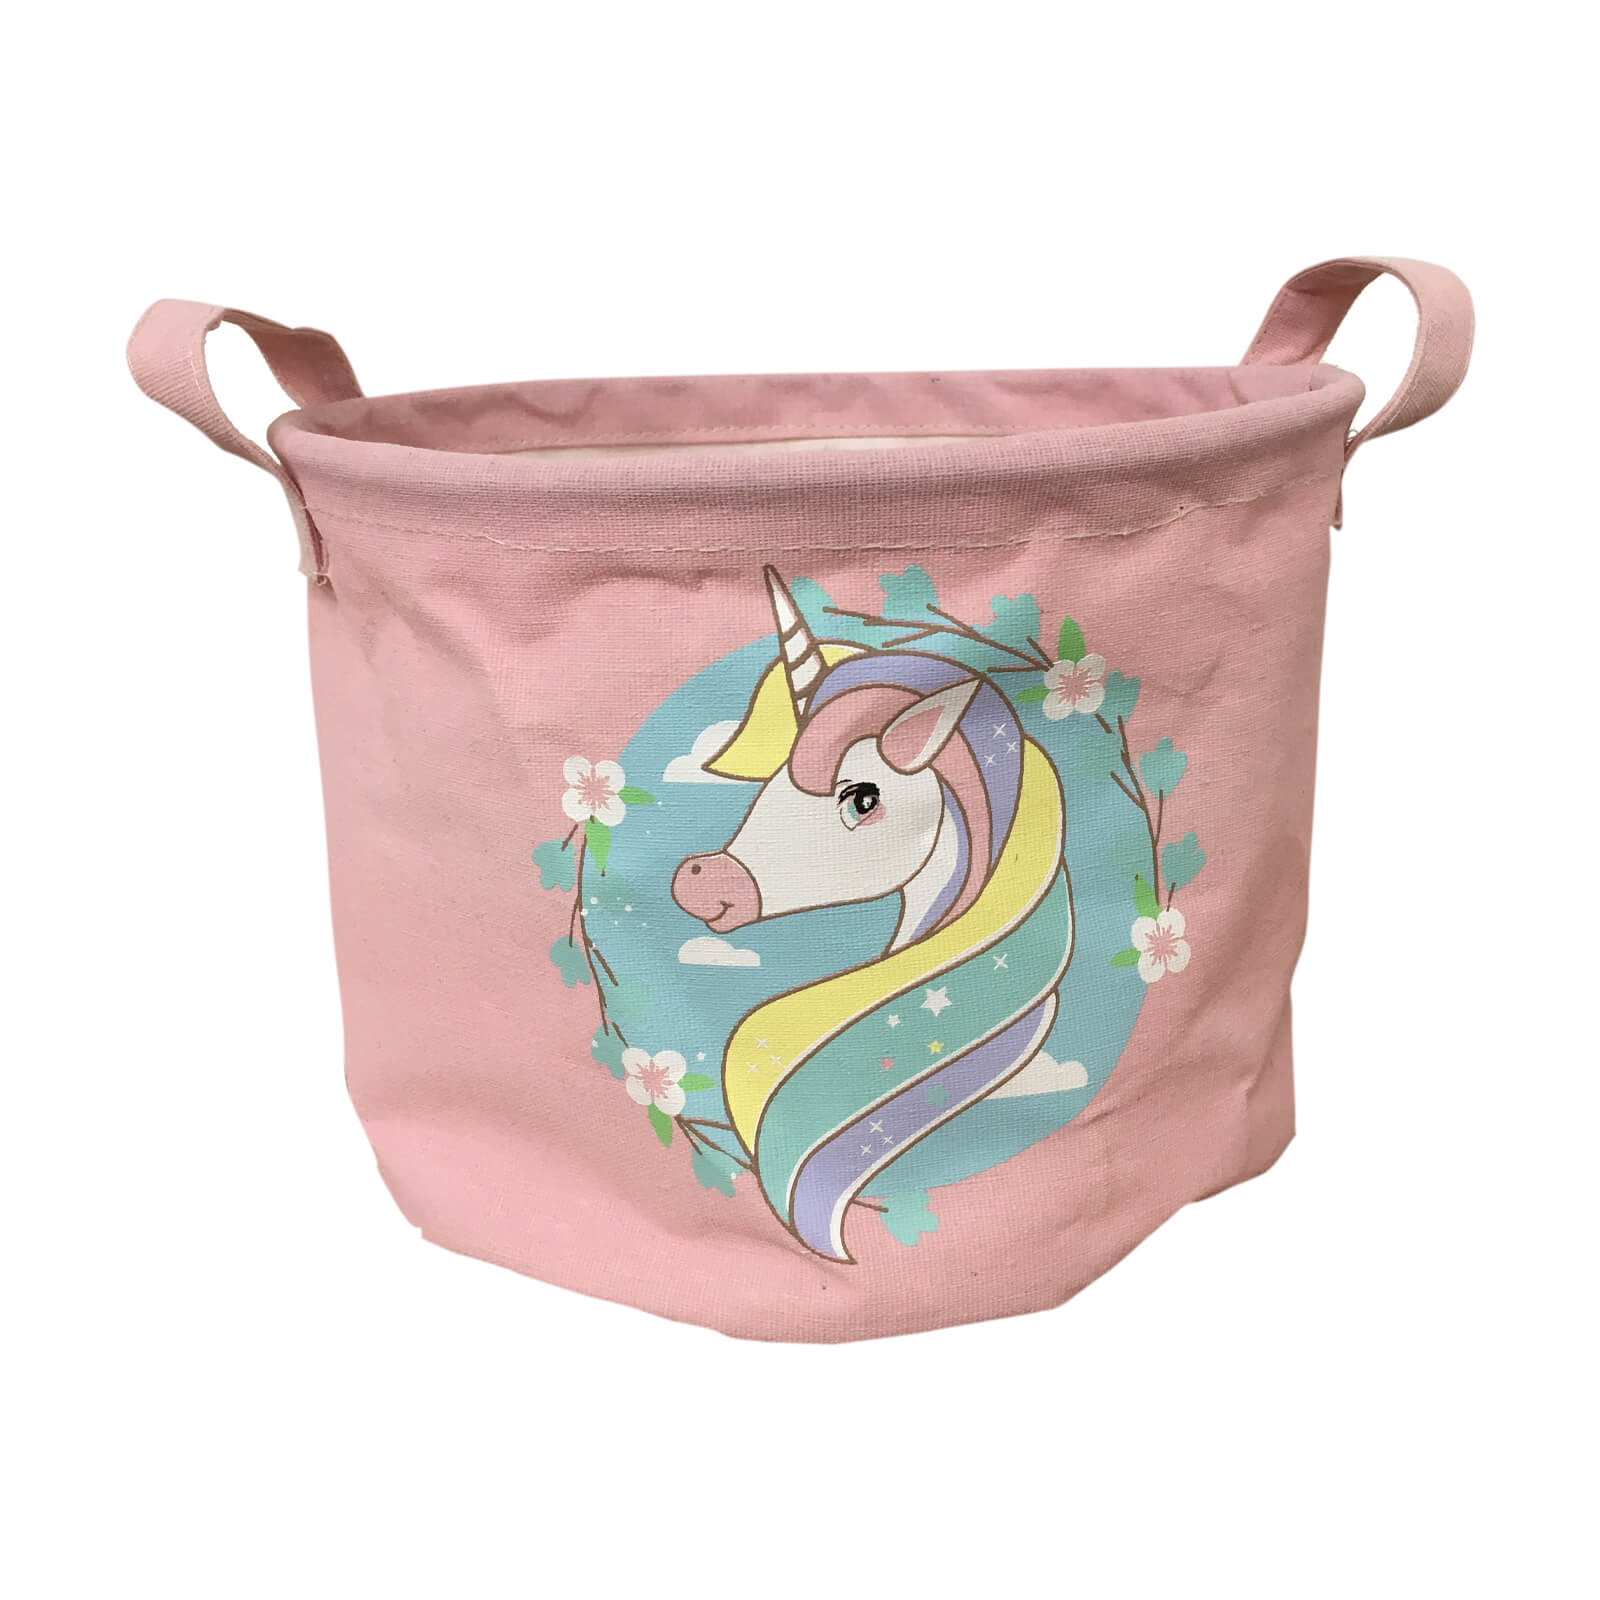 Photo of Fabric Toy Storage Basket - Unicorns